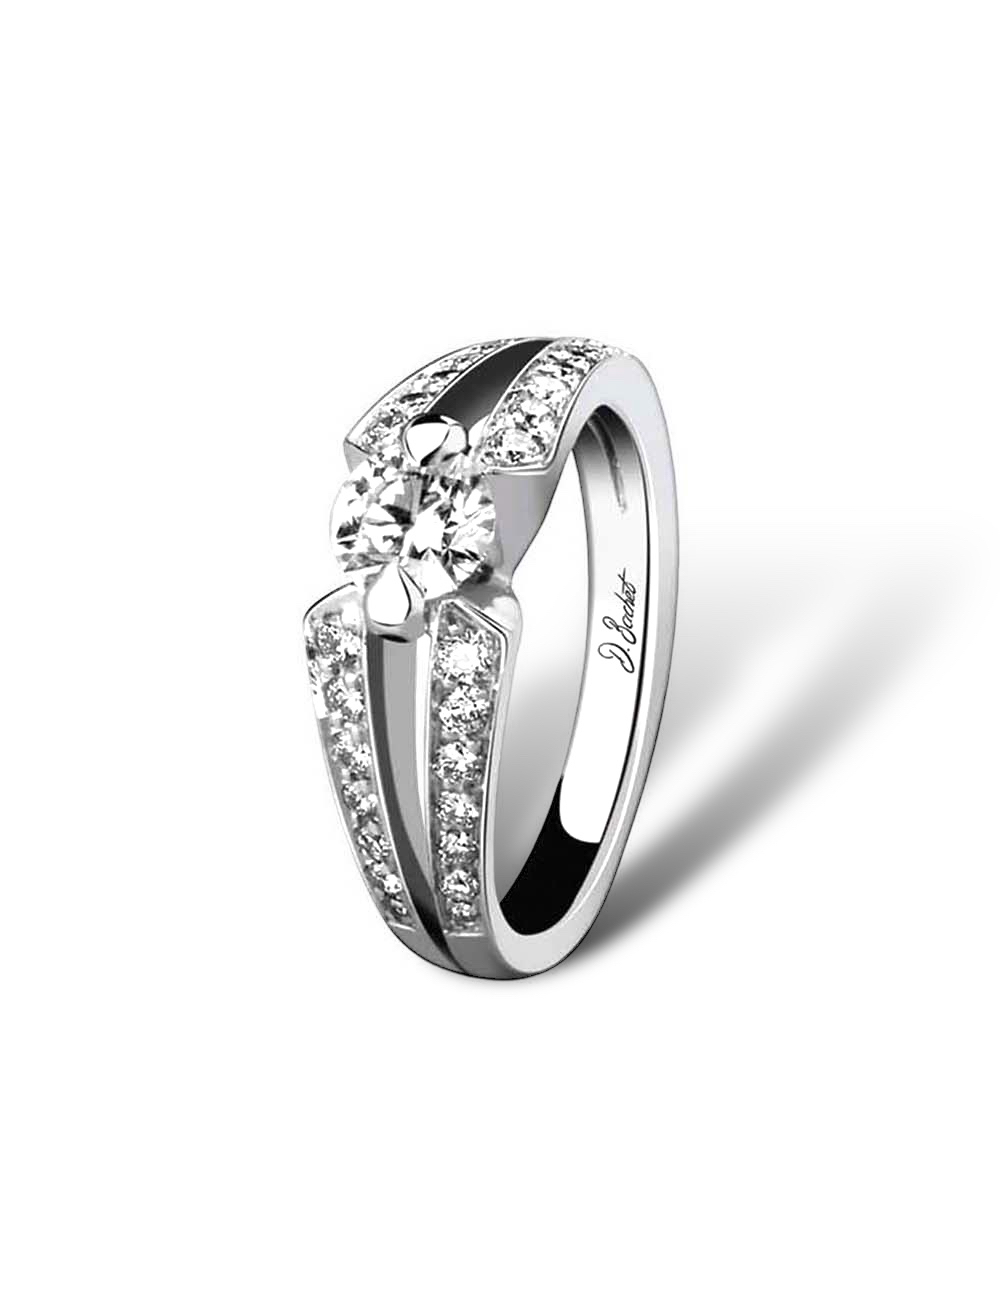 Bague de fiançailles solitaire en platine, 0.50ct diamant blanc central, monture pavée diamants pour un éclat intemporel.